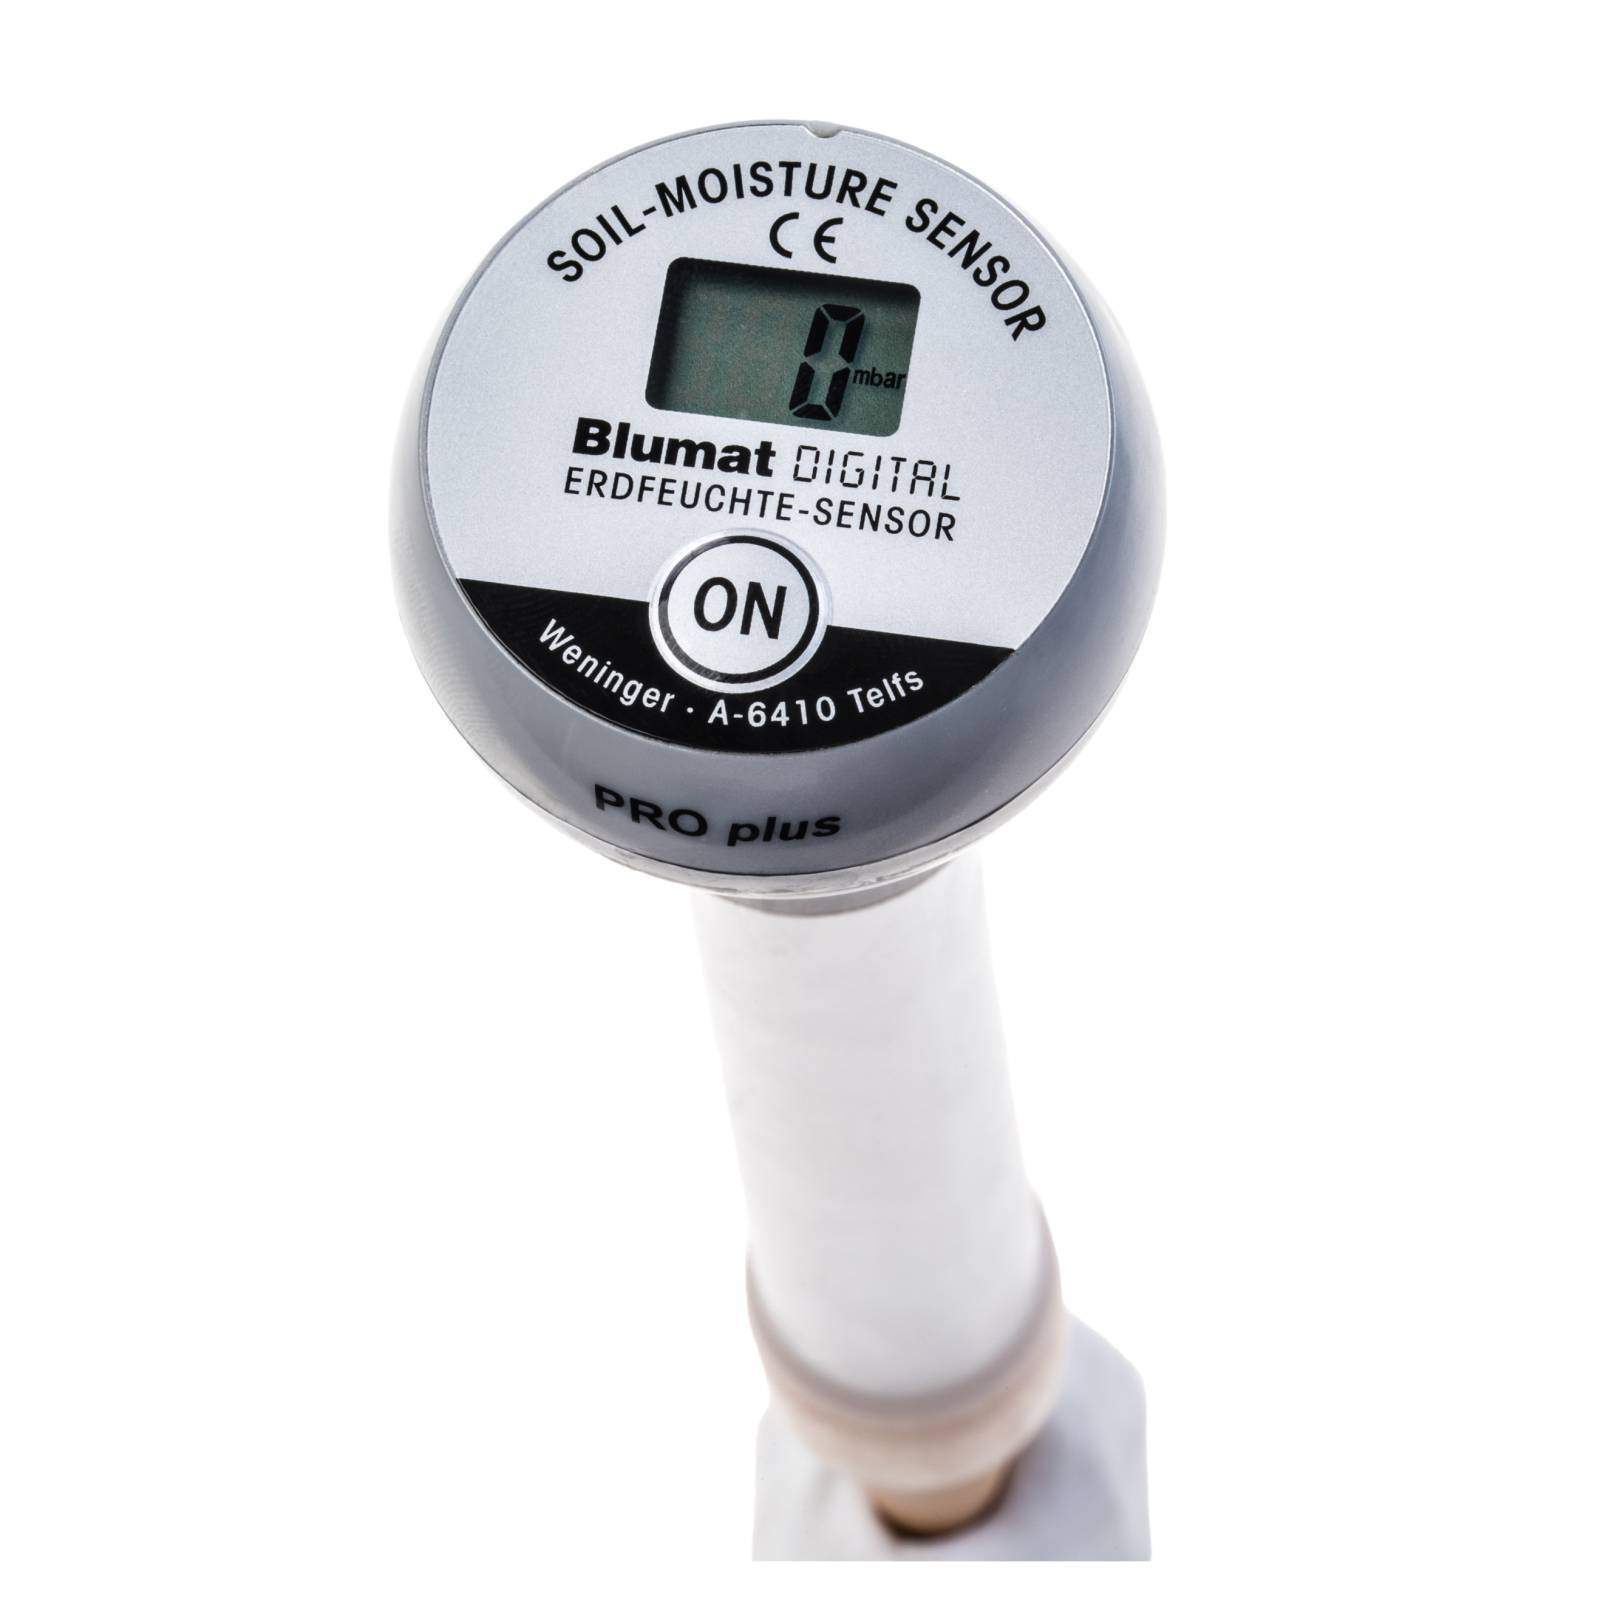 blumat digital moisture meter